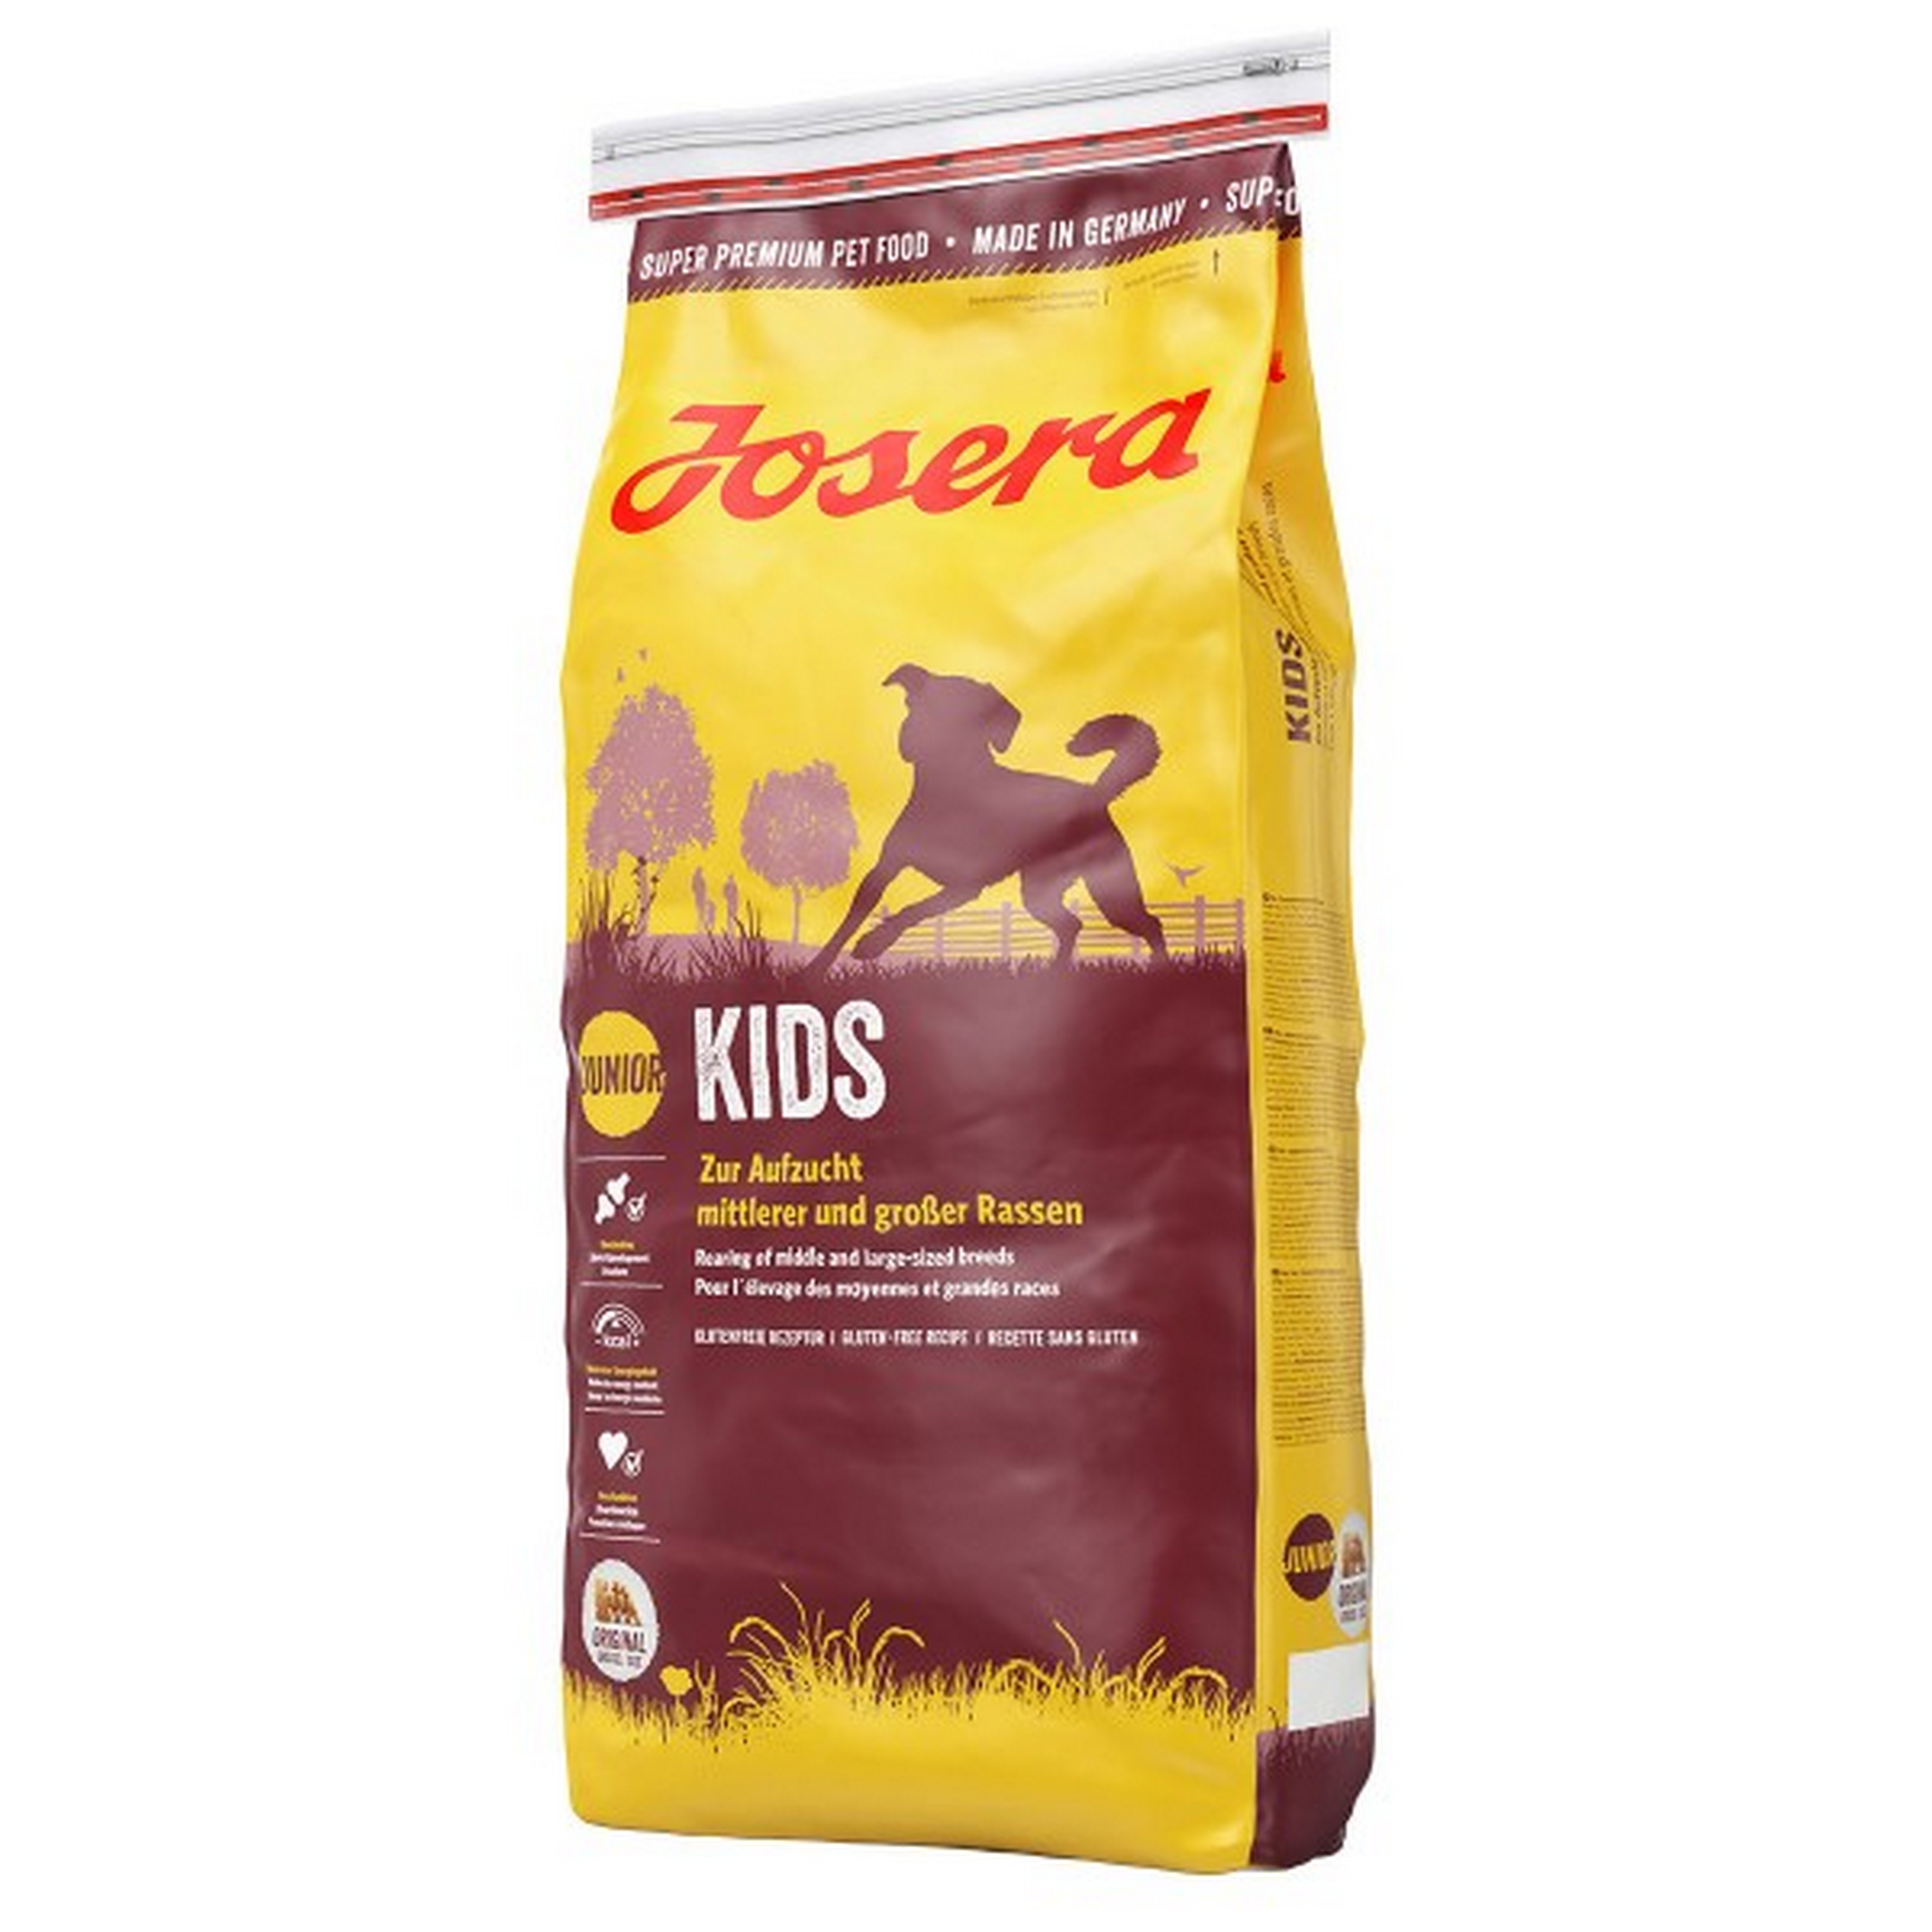 Hundetrockenfutter 'Kids' Geflügel 15 kg + product picture